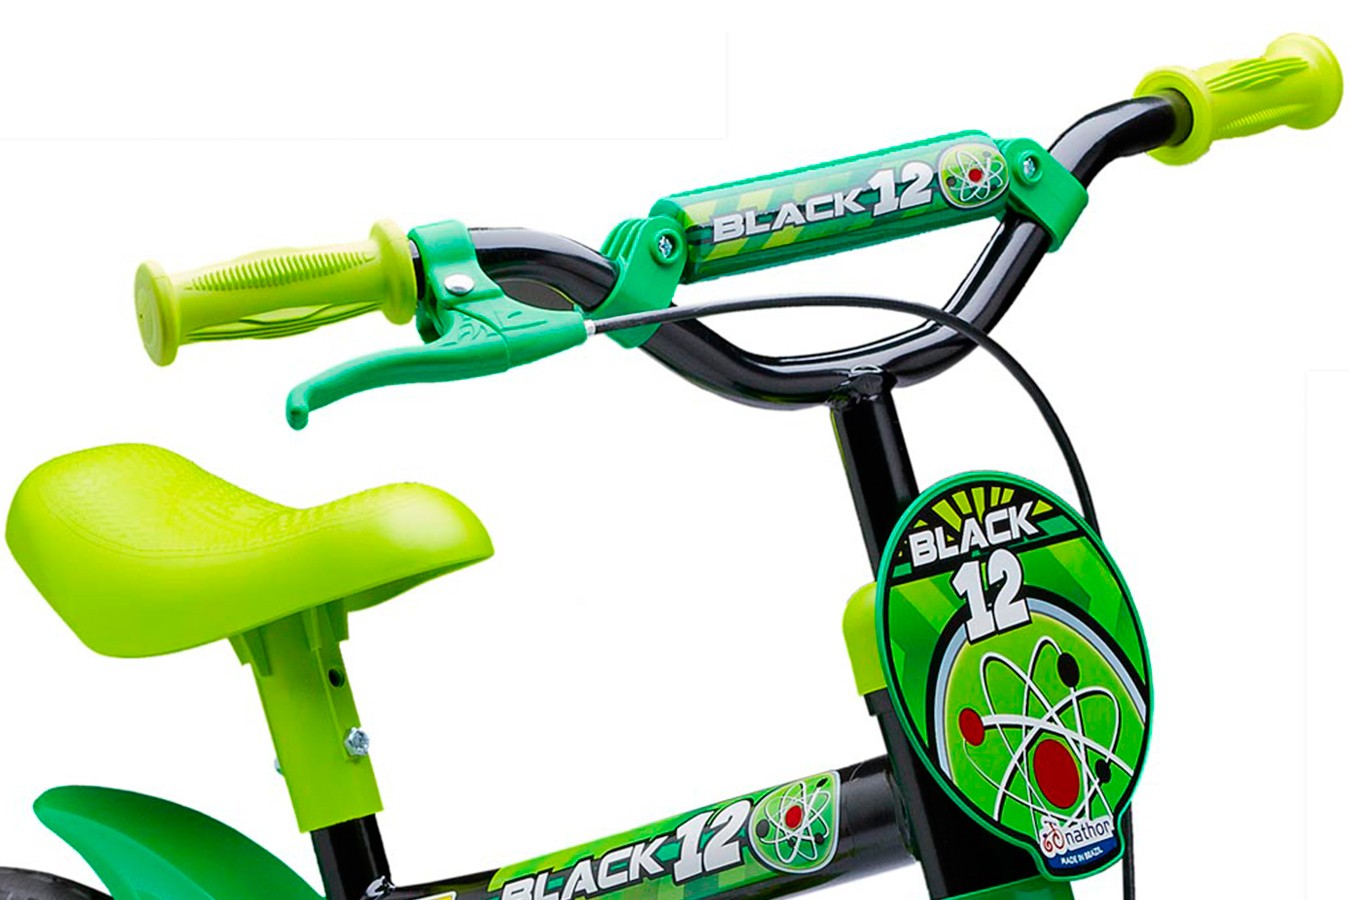 Bicicleta 12 Infantil Black - Nathor